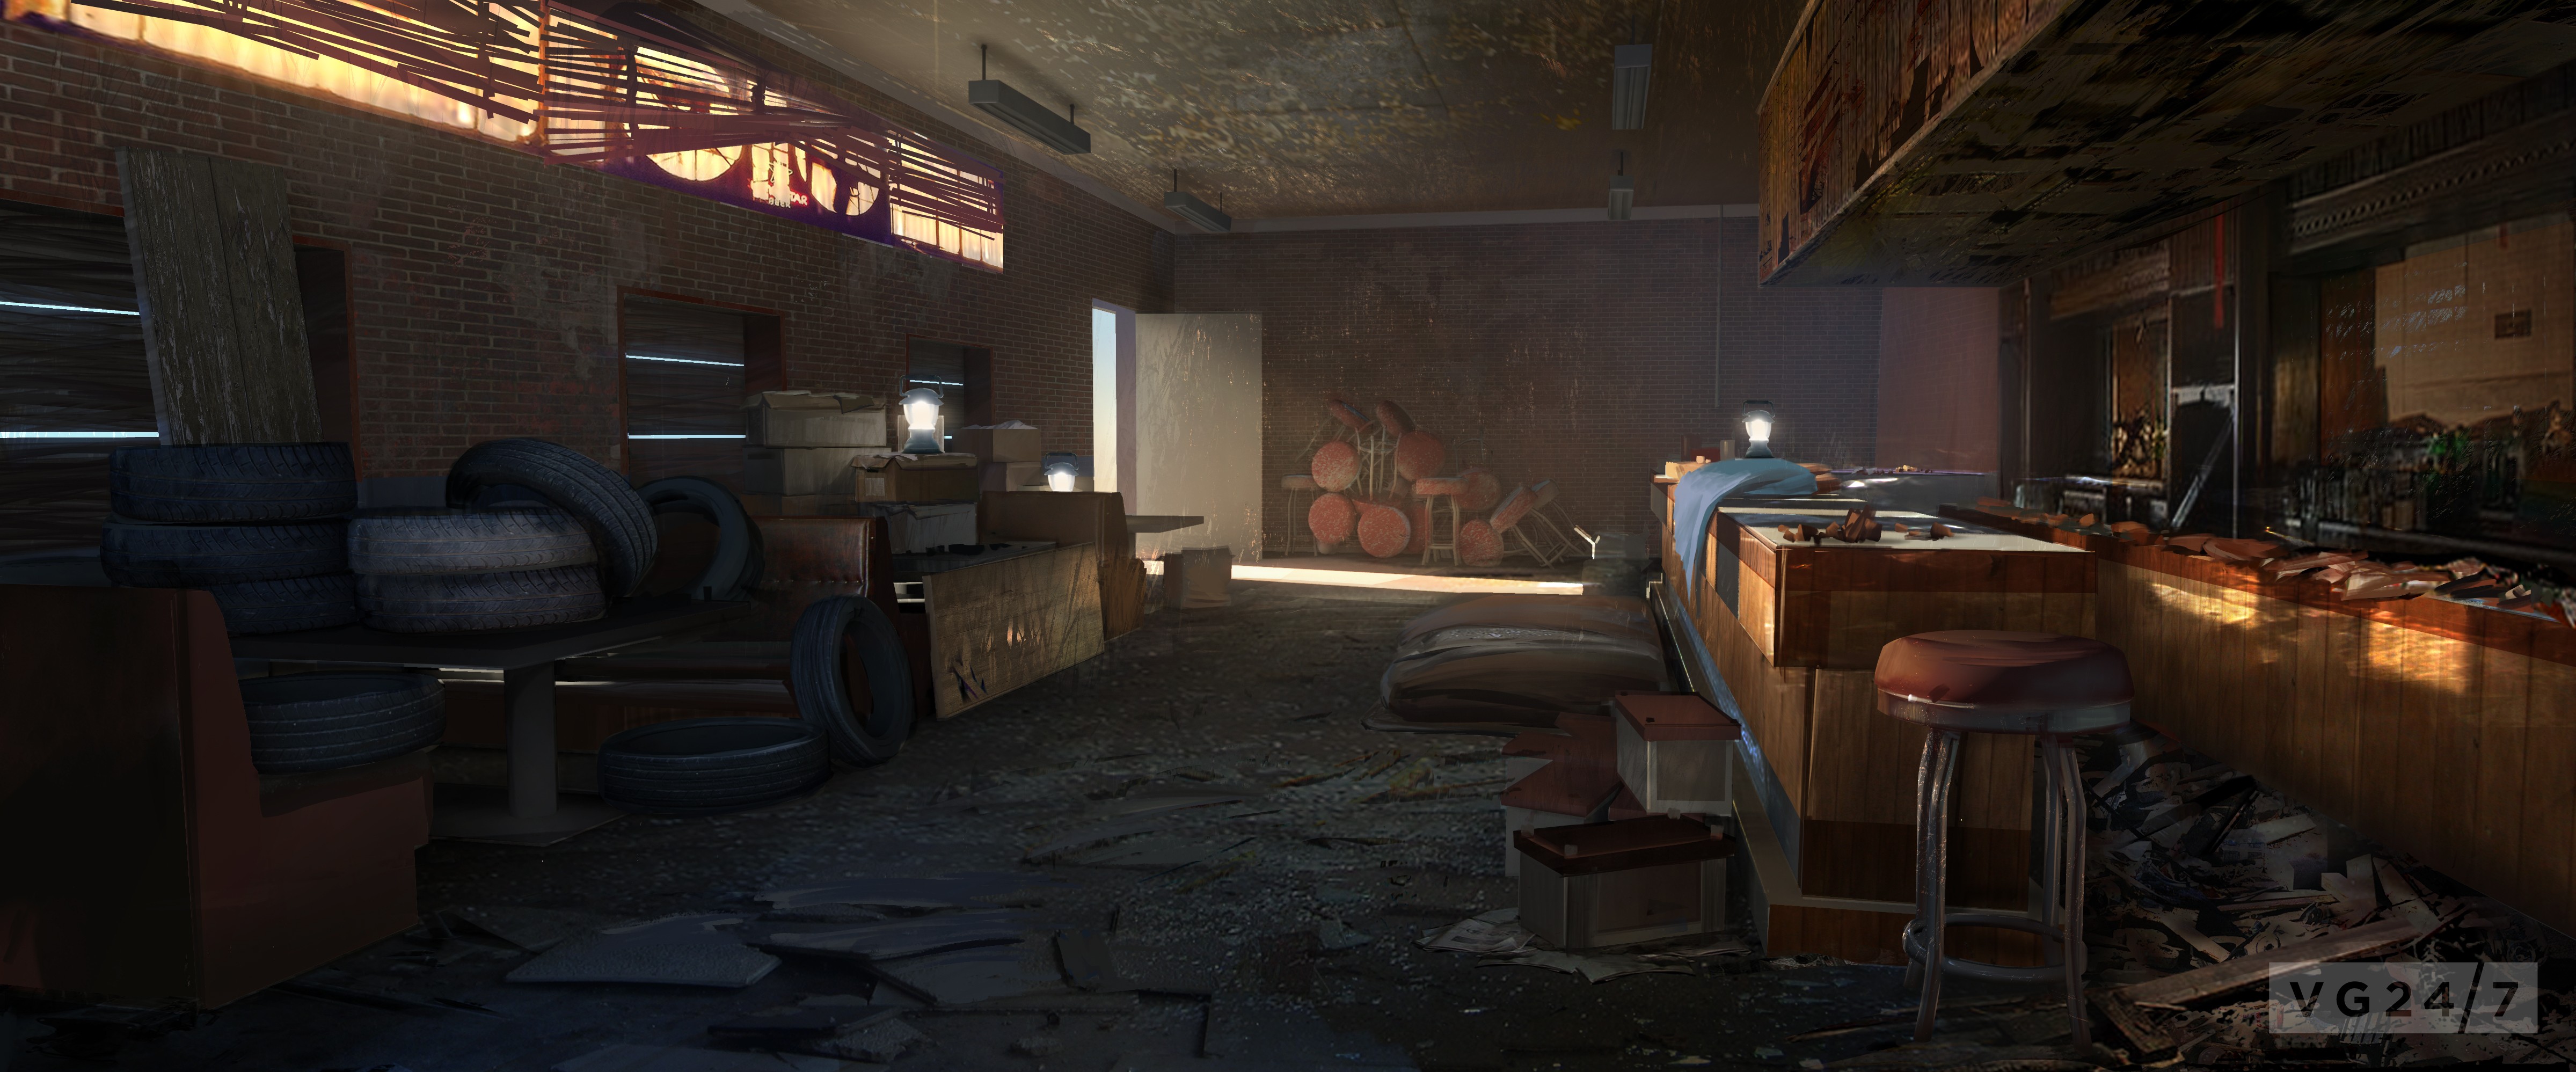 The Last Of Us, Concept Art, Video Games, Artwork, Digital 2D Wallpaper